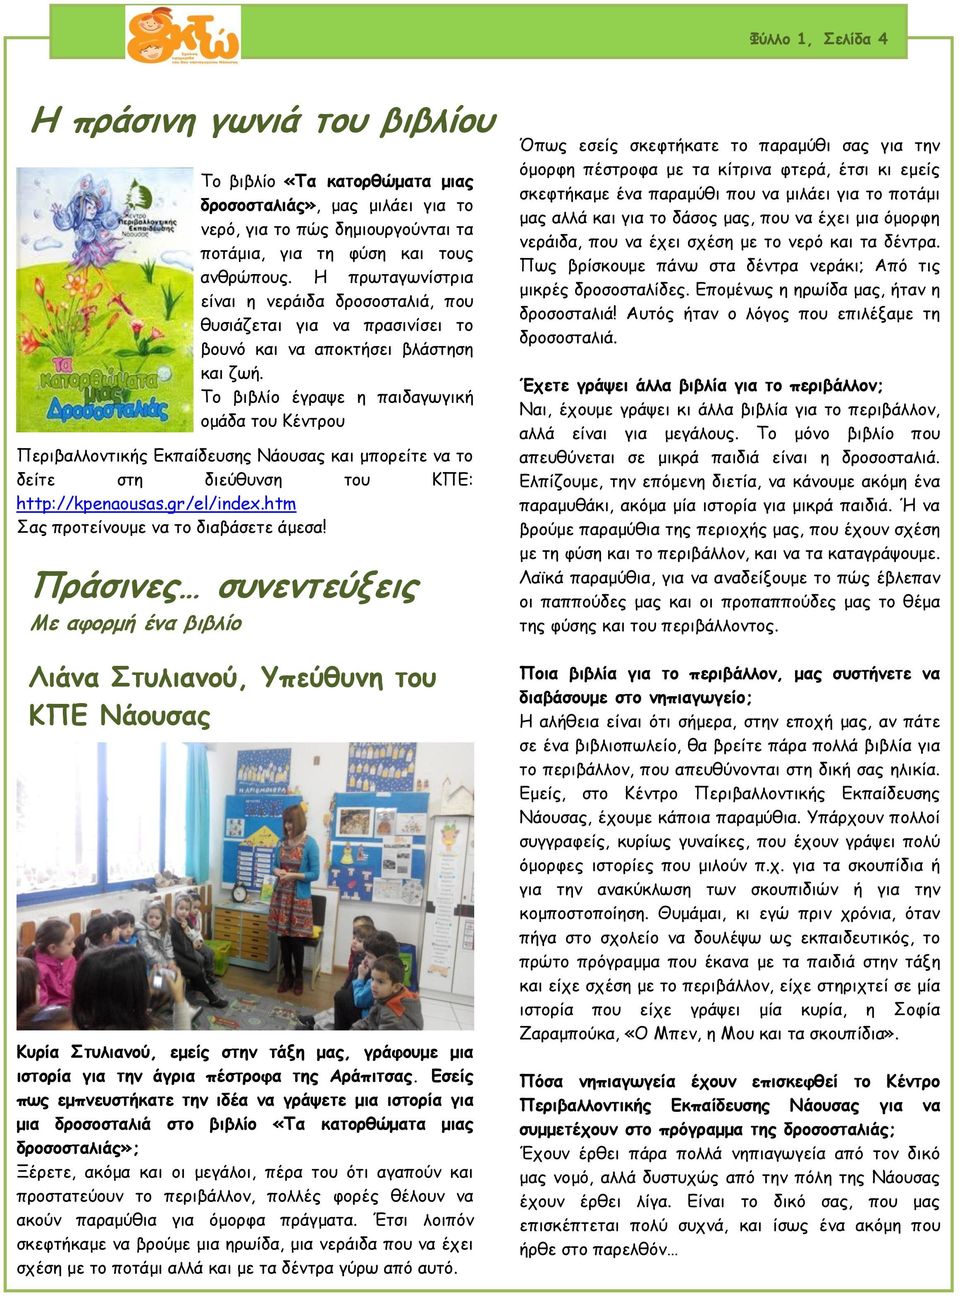 Το βιβλίο έγραψε η παιδαγωγική ομάδα του Κέντρου Περιβαλλοντικής Εκπαίδευσης Νάουσας και μπορείτε να το δείτε στη διεύθυνση του ΚΠΕ: http://kpenaousas.gr/el/index.